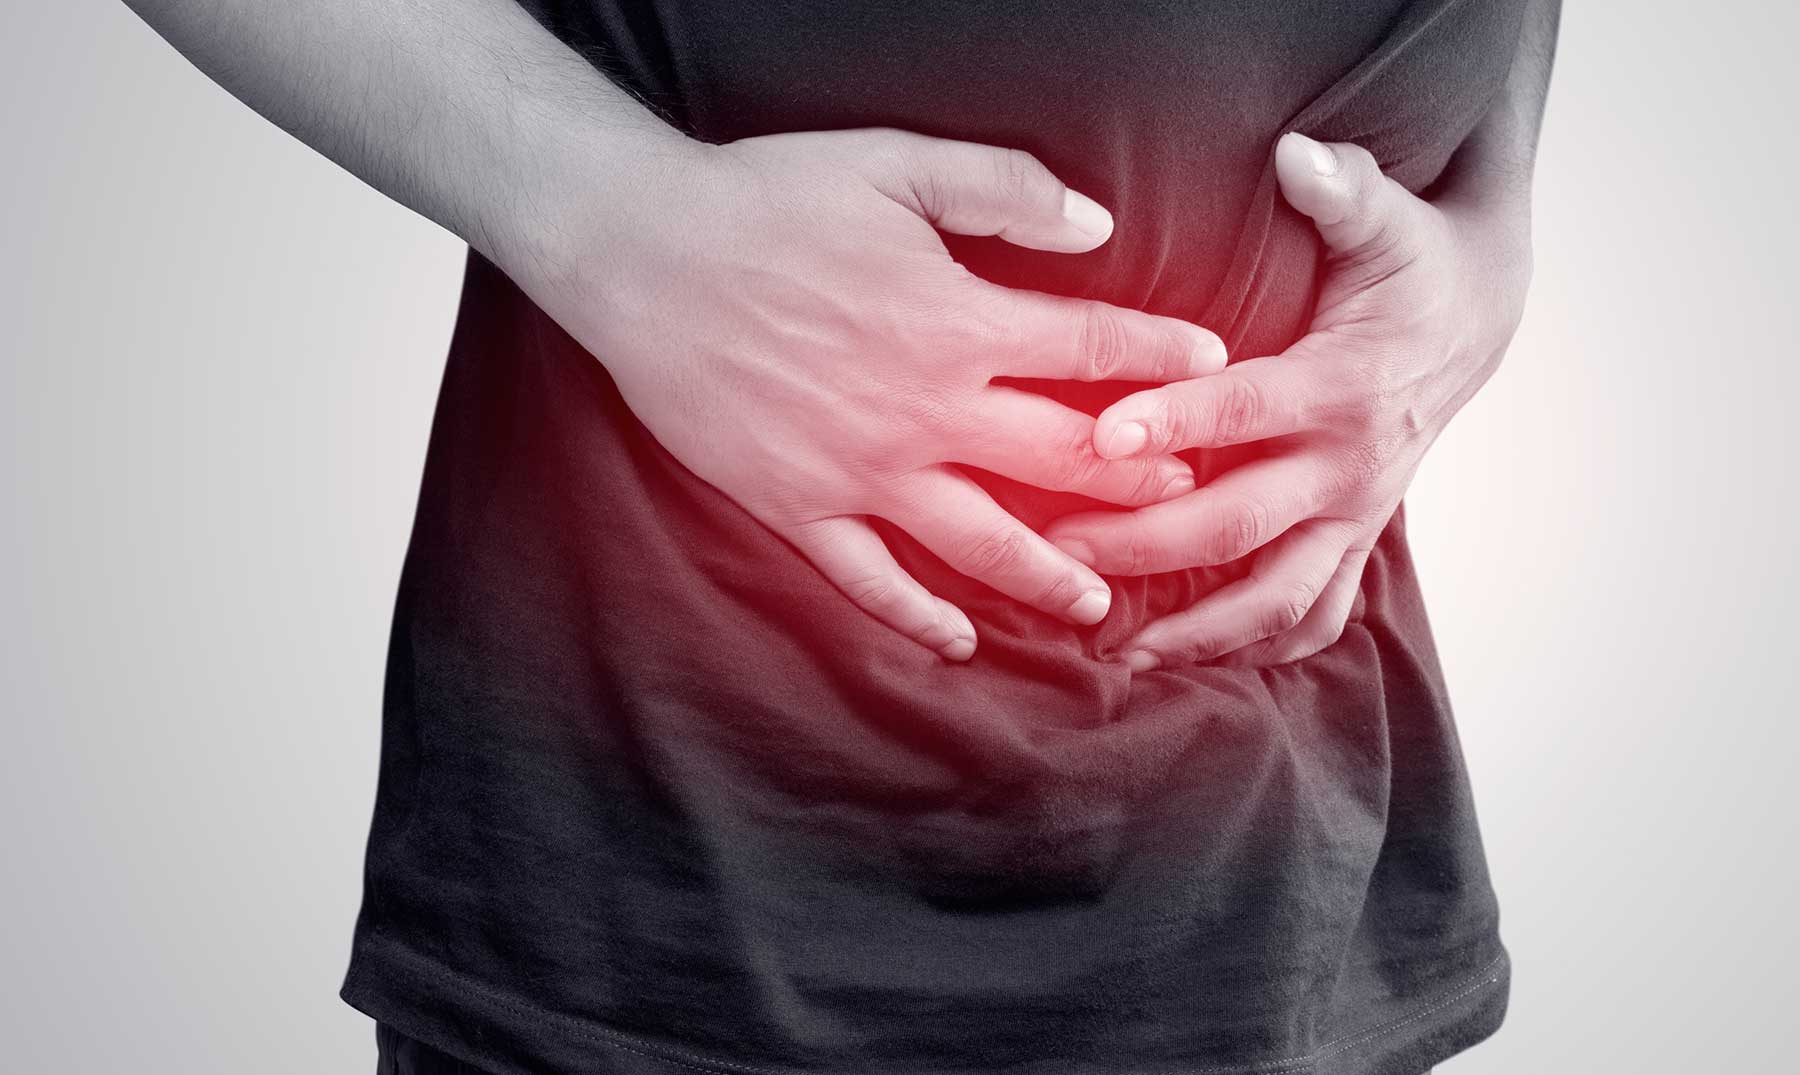 Resultado de imagen para Síntomas y causas de la gastritis que no conocías